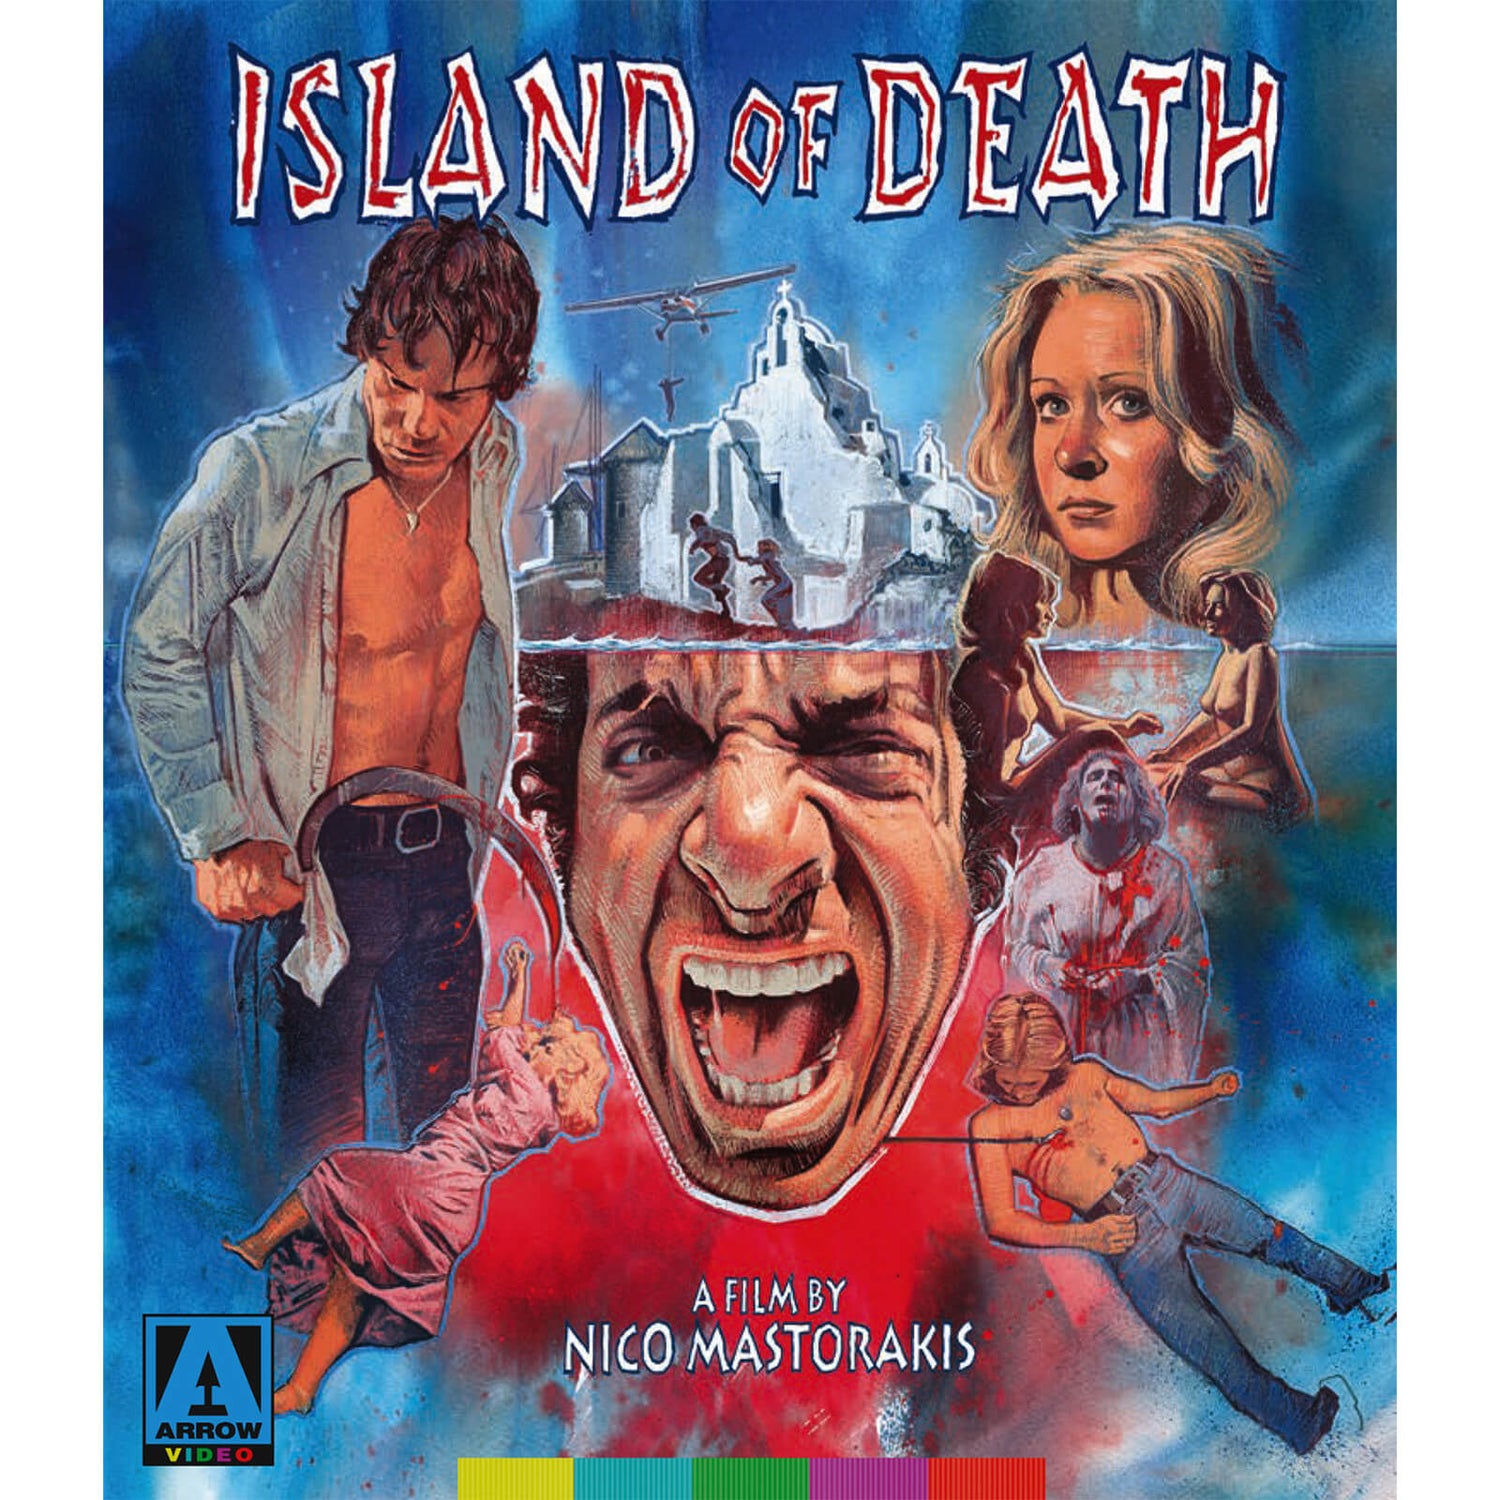 Island Of Death Blu-ray+DVD